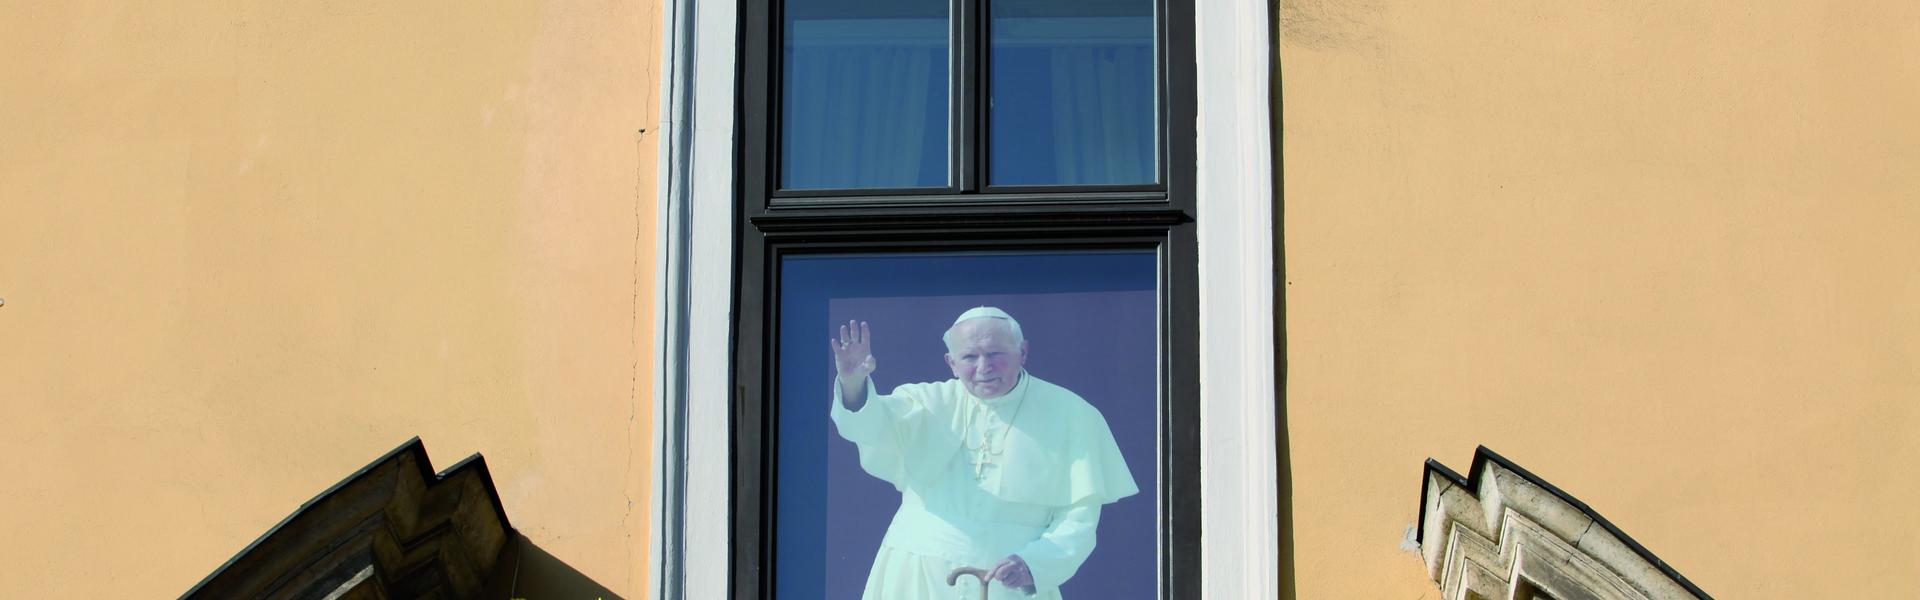 Widok na okno papieskie w Krakowie, z wizerunkiem Jana Pawła II